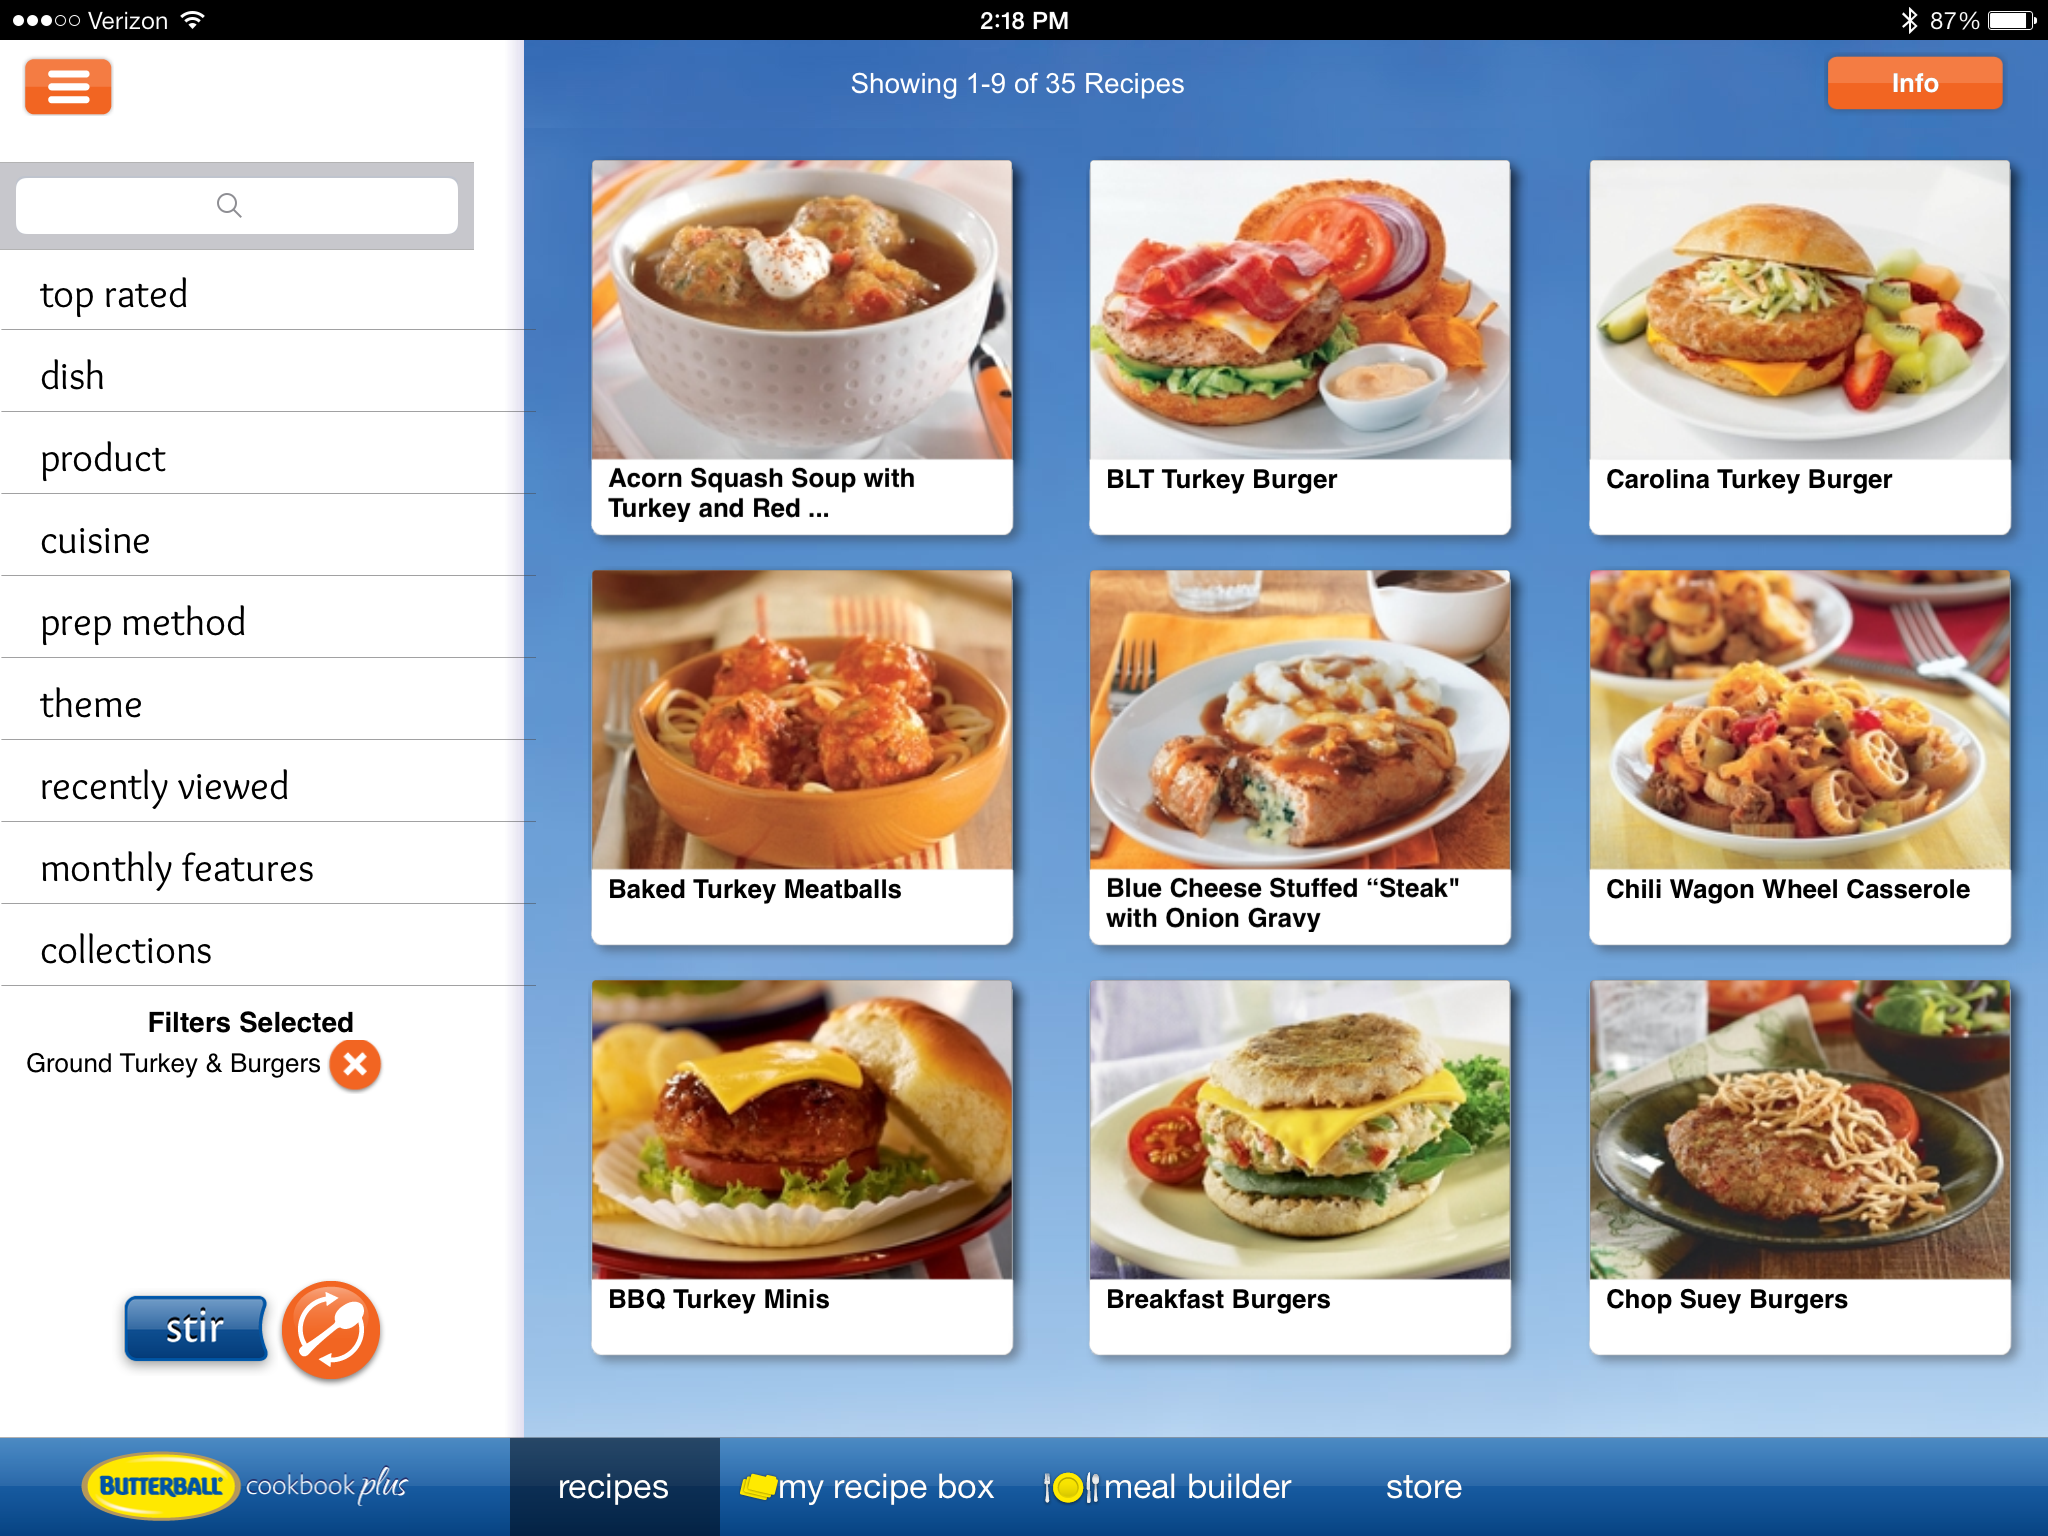 Butterball cookbook app